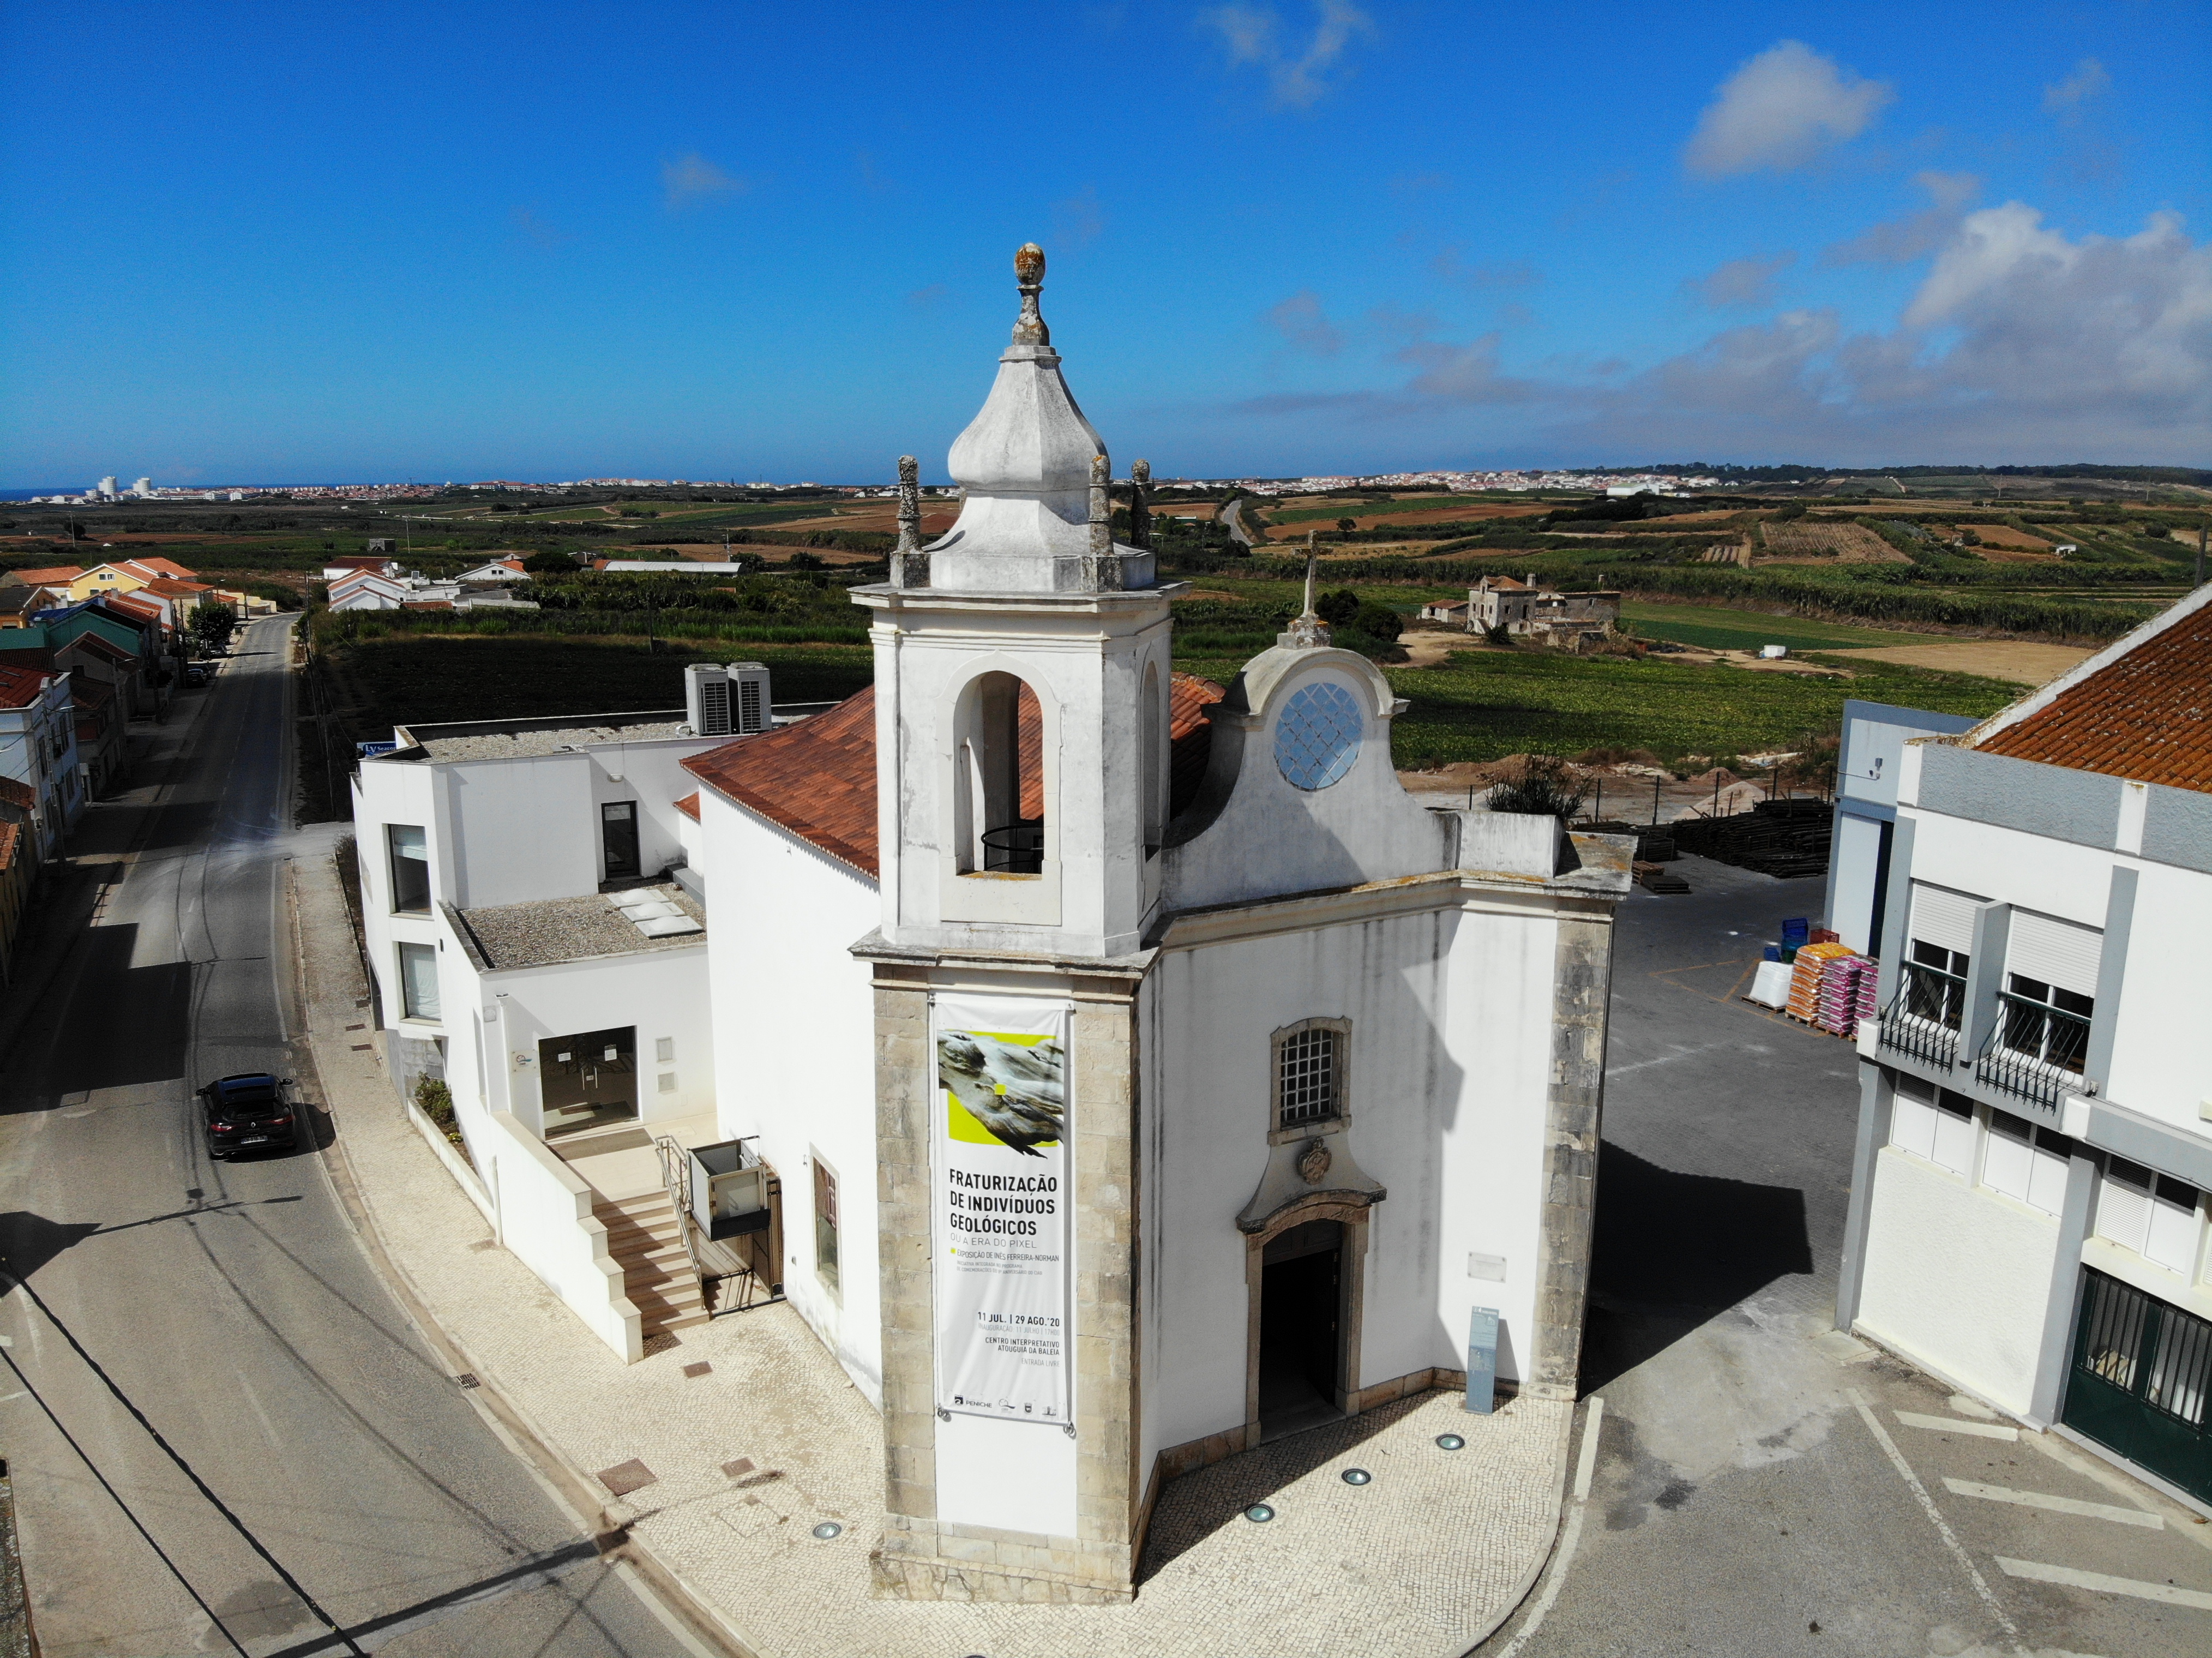 St. Joseph Church and Museum in Atouguia<br>da Baleia